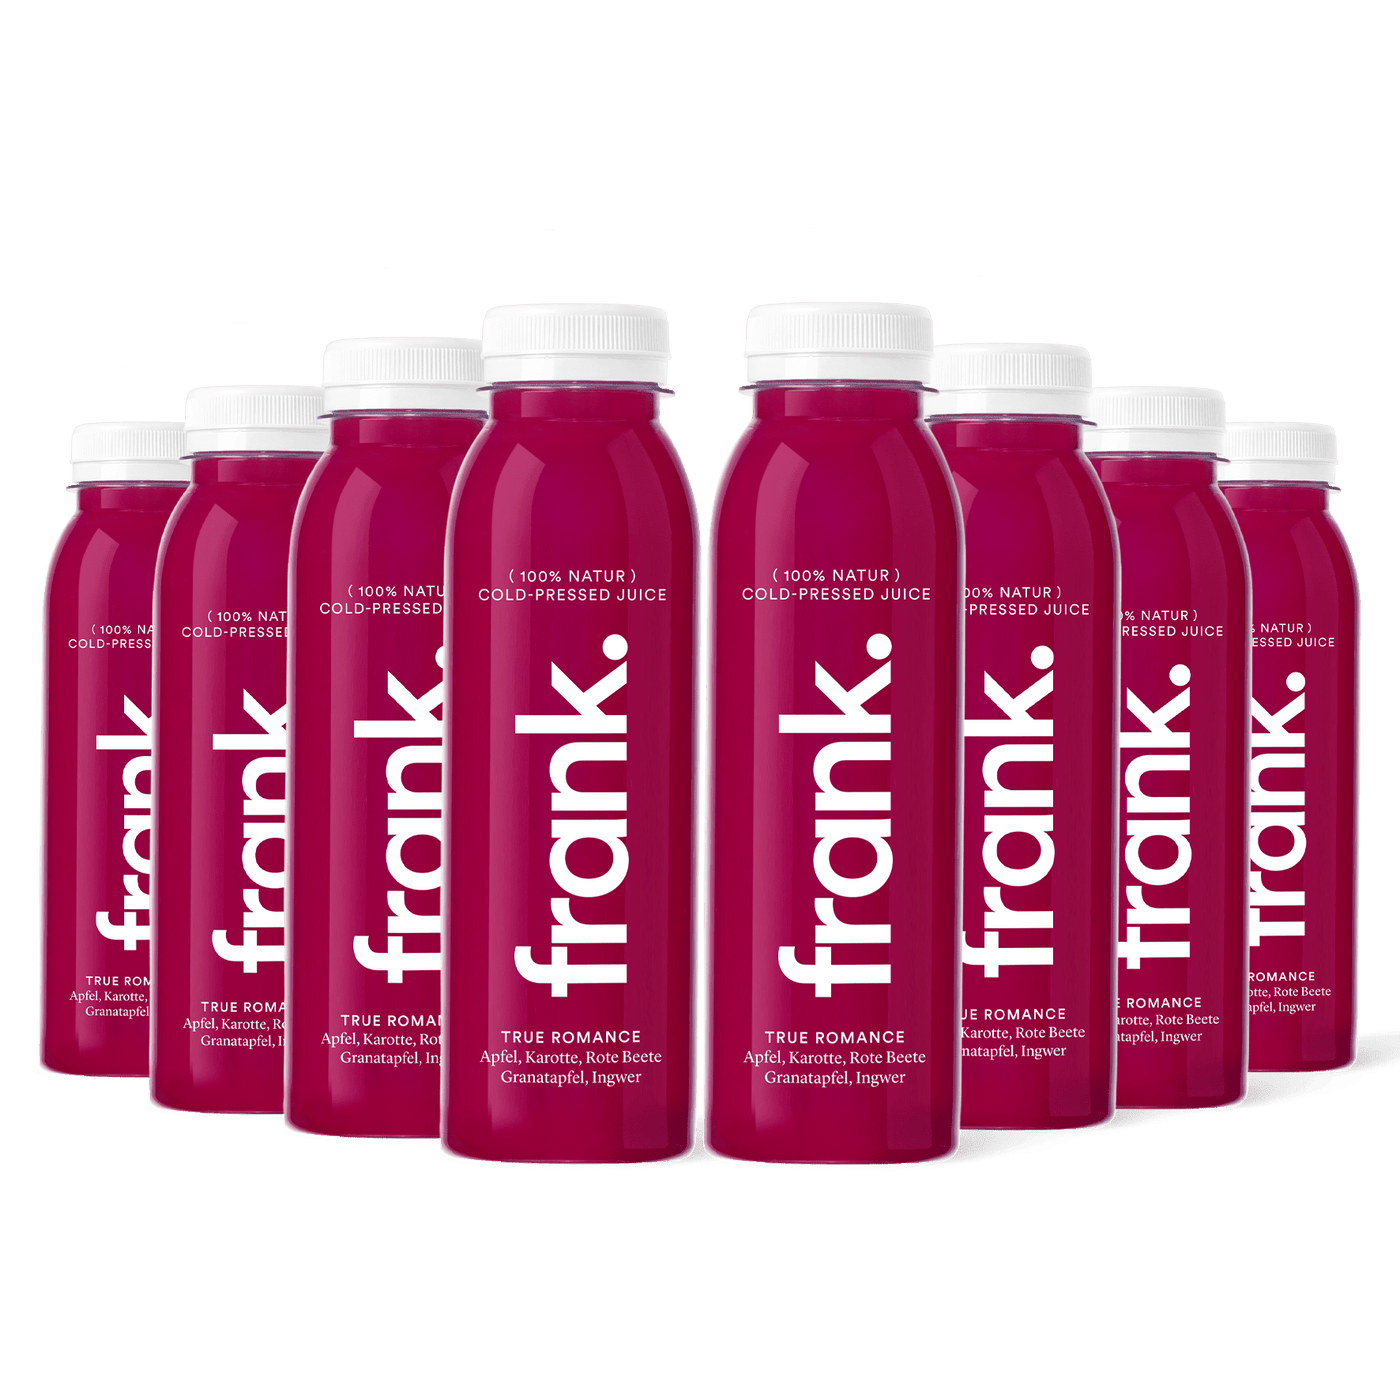 Darstellung der Juice-Box True Romance mit Apfel, Karotte, Rote Beete, Granatapfel und Ingwer bestehend aus 8 Säften von frank